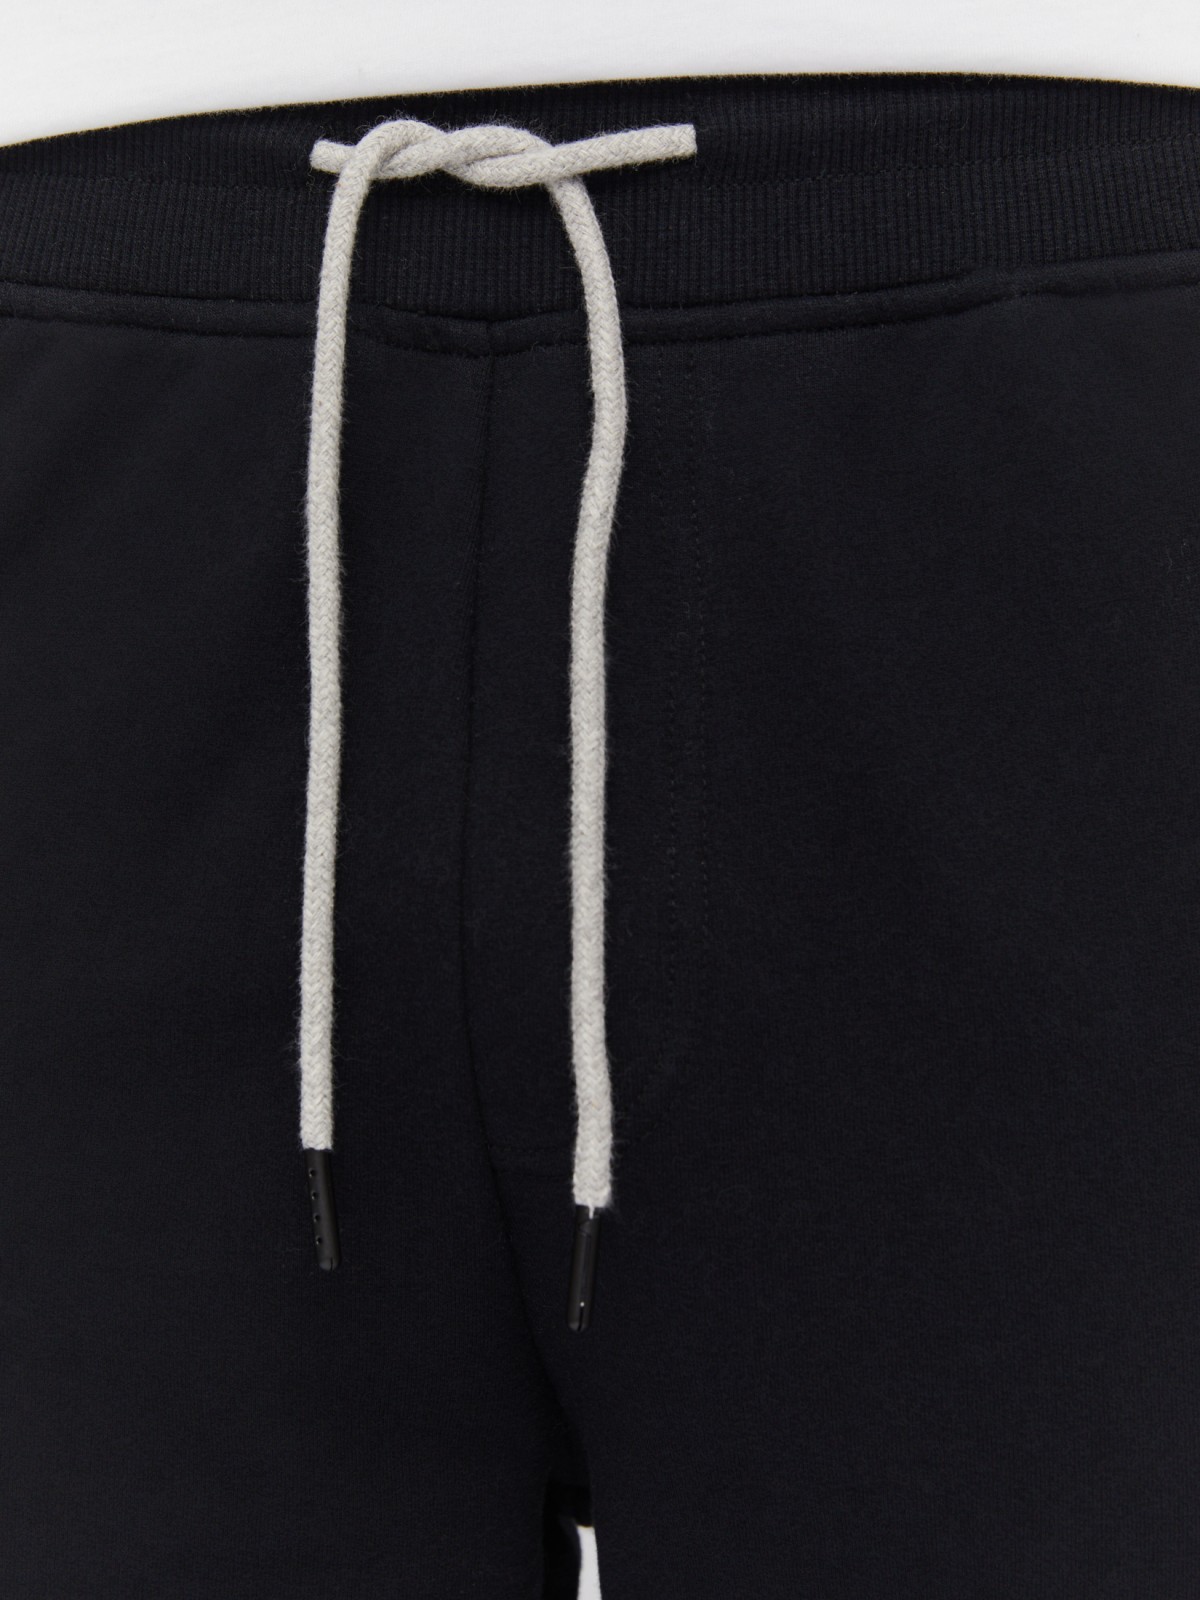 Трикотажные брюки-джоггеры с лампасами zolla 014137660061, цвет черный, размер S - фото 5